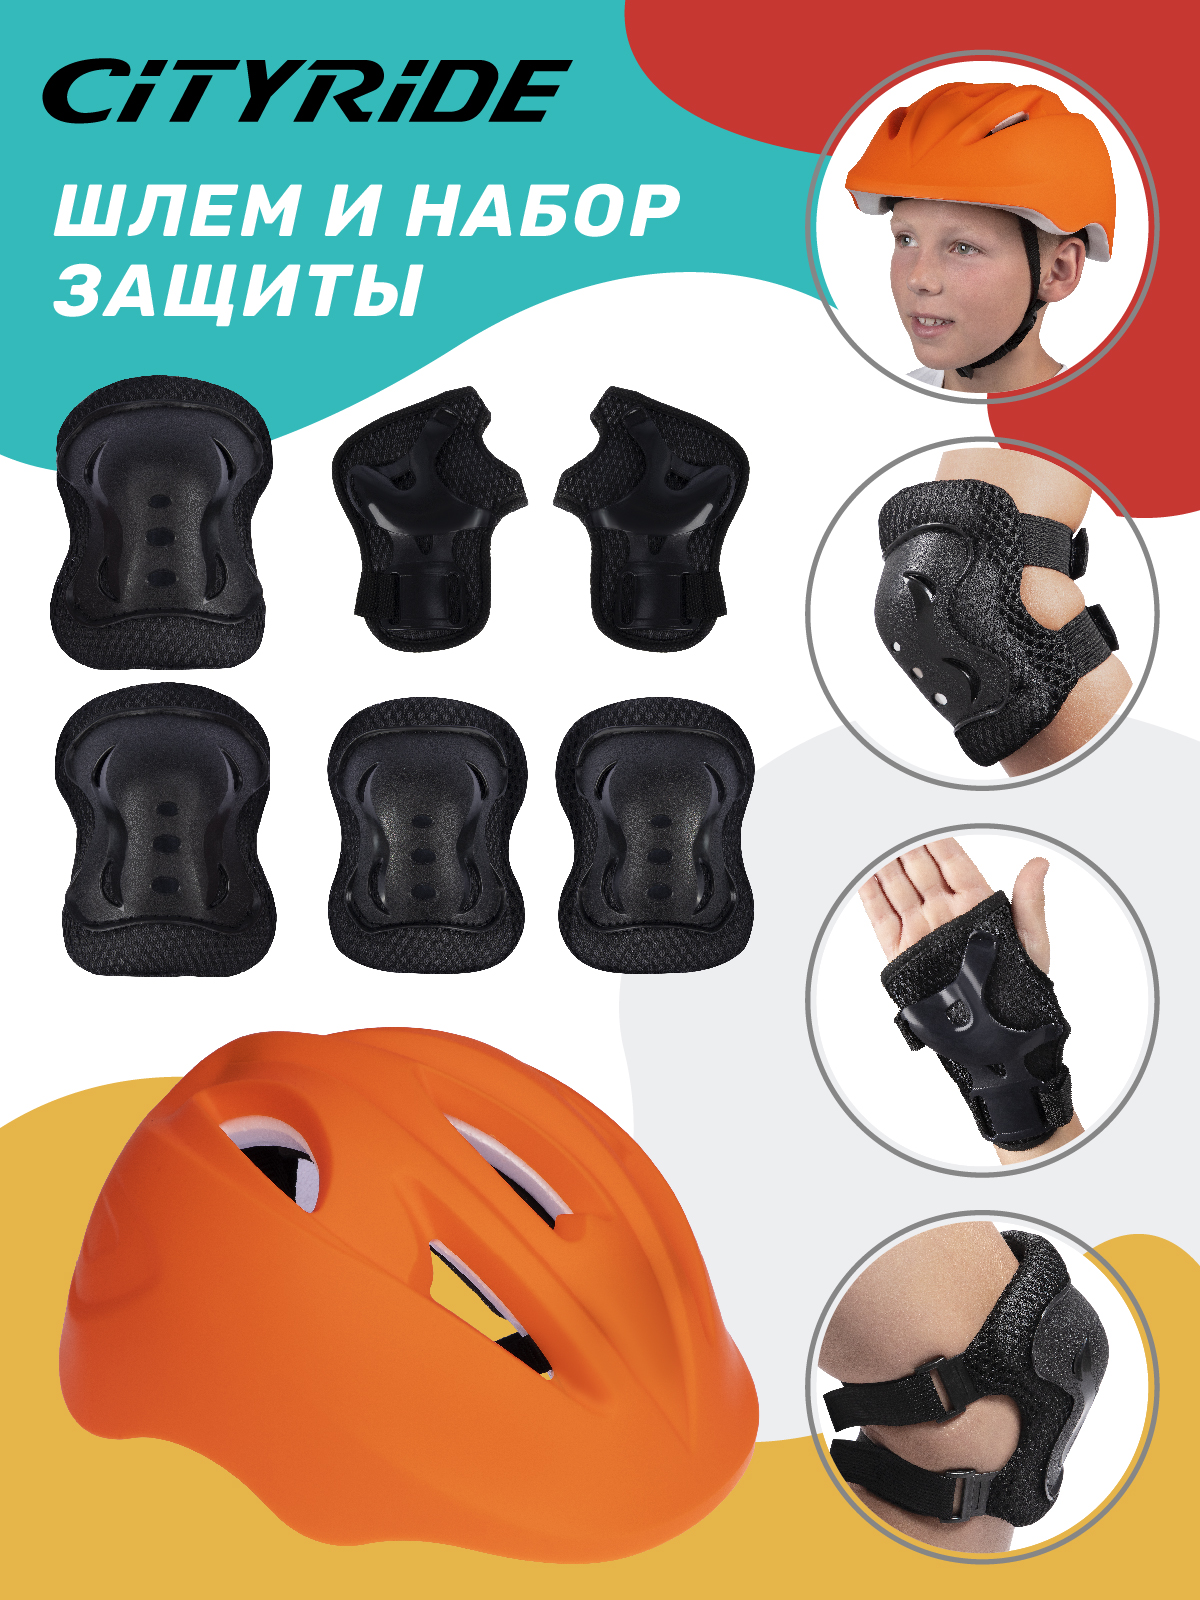 Комплект шлем, спортивная защита для детей ТМ City Ride, размер универсальный, JB0211562 скейтборд city ride дека клен 9 слоев размер 31х8 колеса pu abec 7 jb4200180